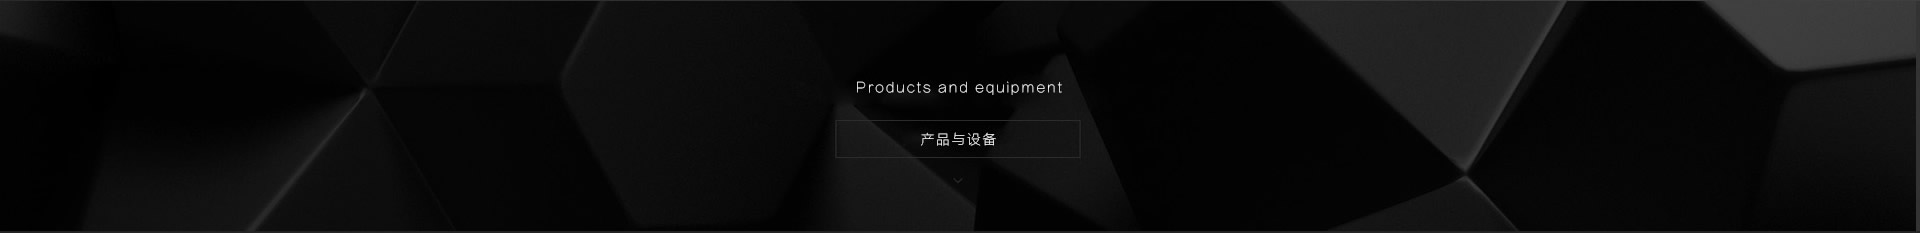 上海3D打印丨3D打印服务丨3D打印模型制作丨金属3D打印丨三维扫描丨逆向建模丨影视道具制作丨展览展示模型丨礼品定制丨智垒电子科技（上海）有限公司